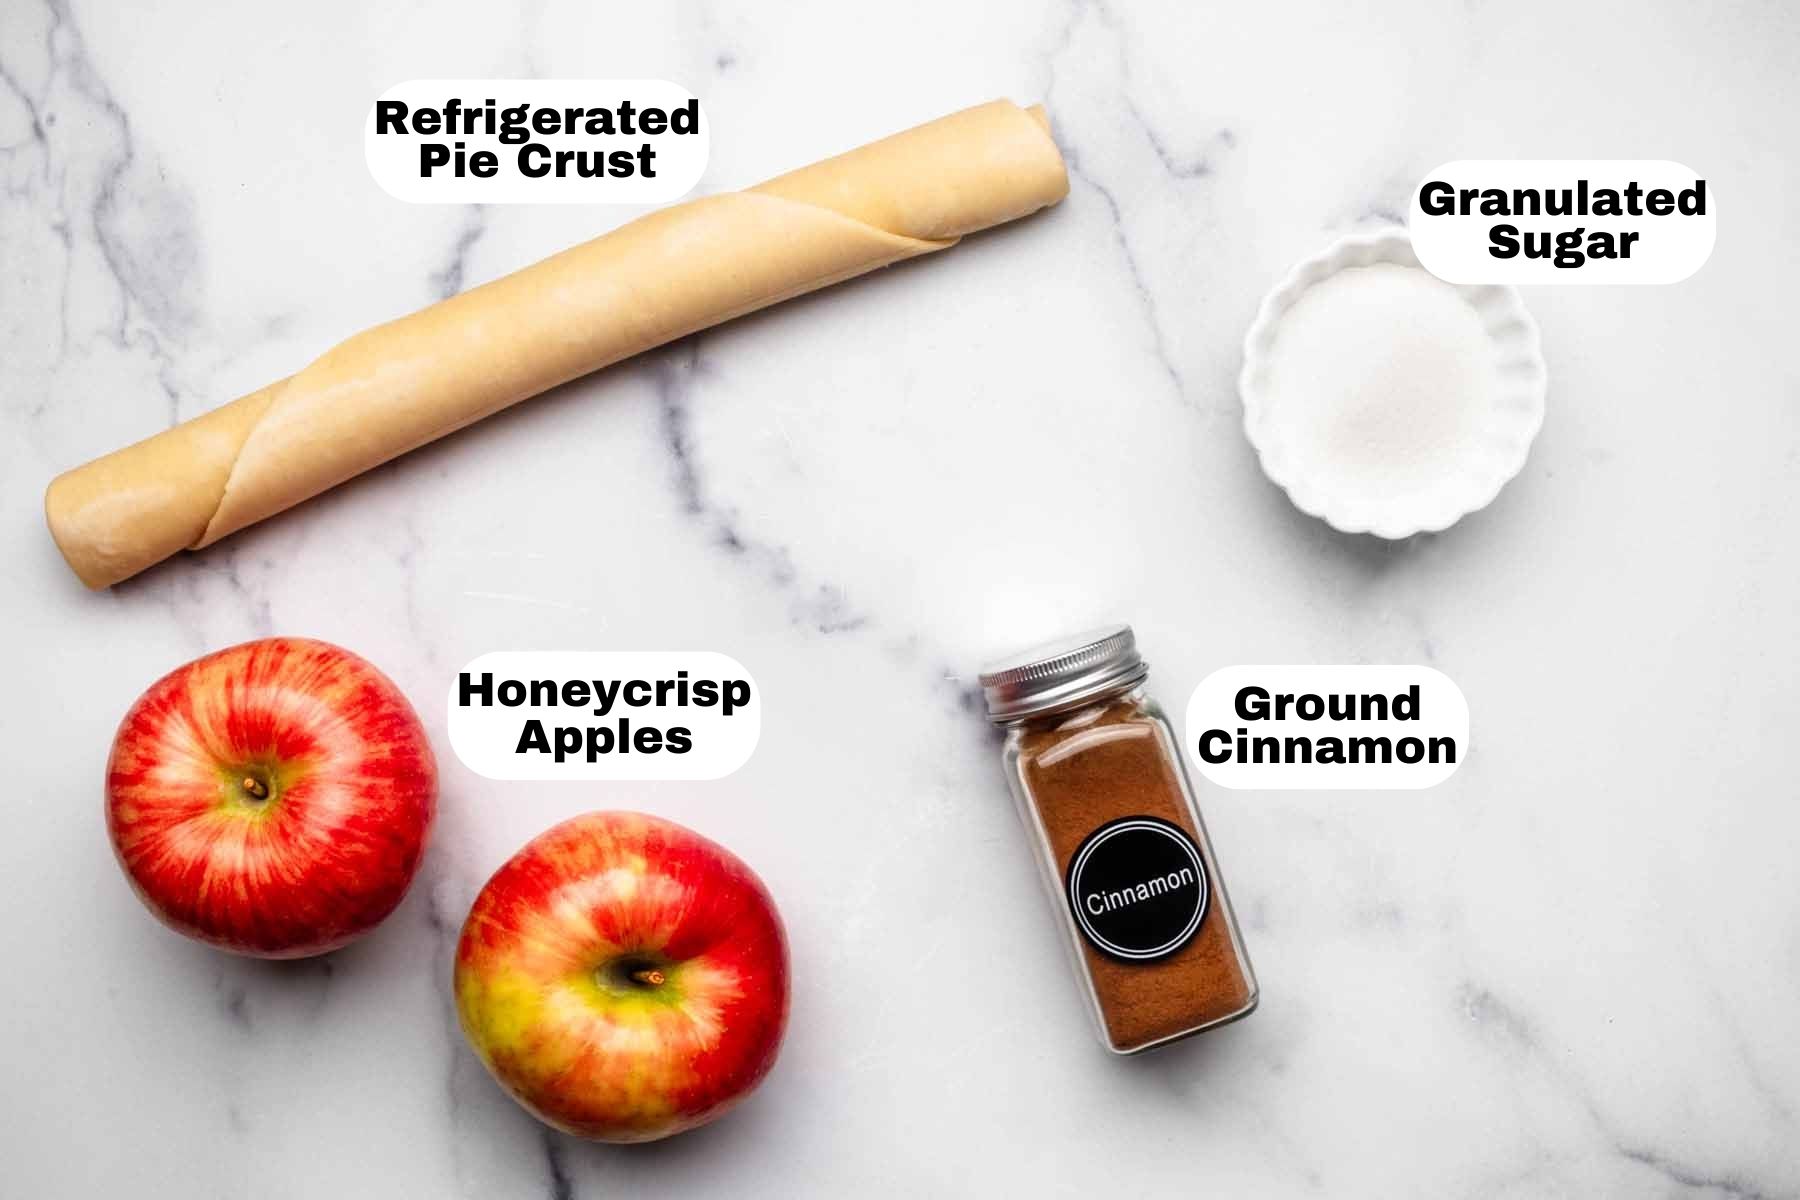 Apple galette ingredients